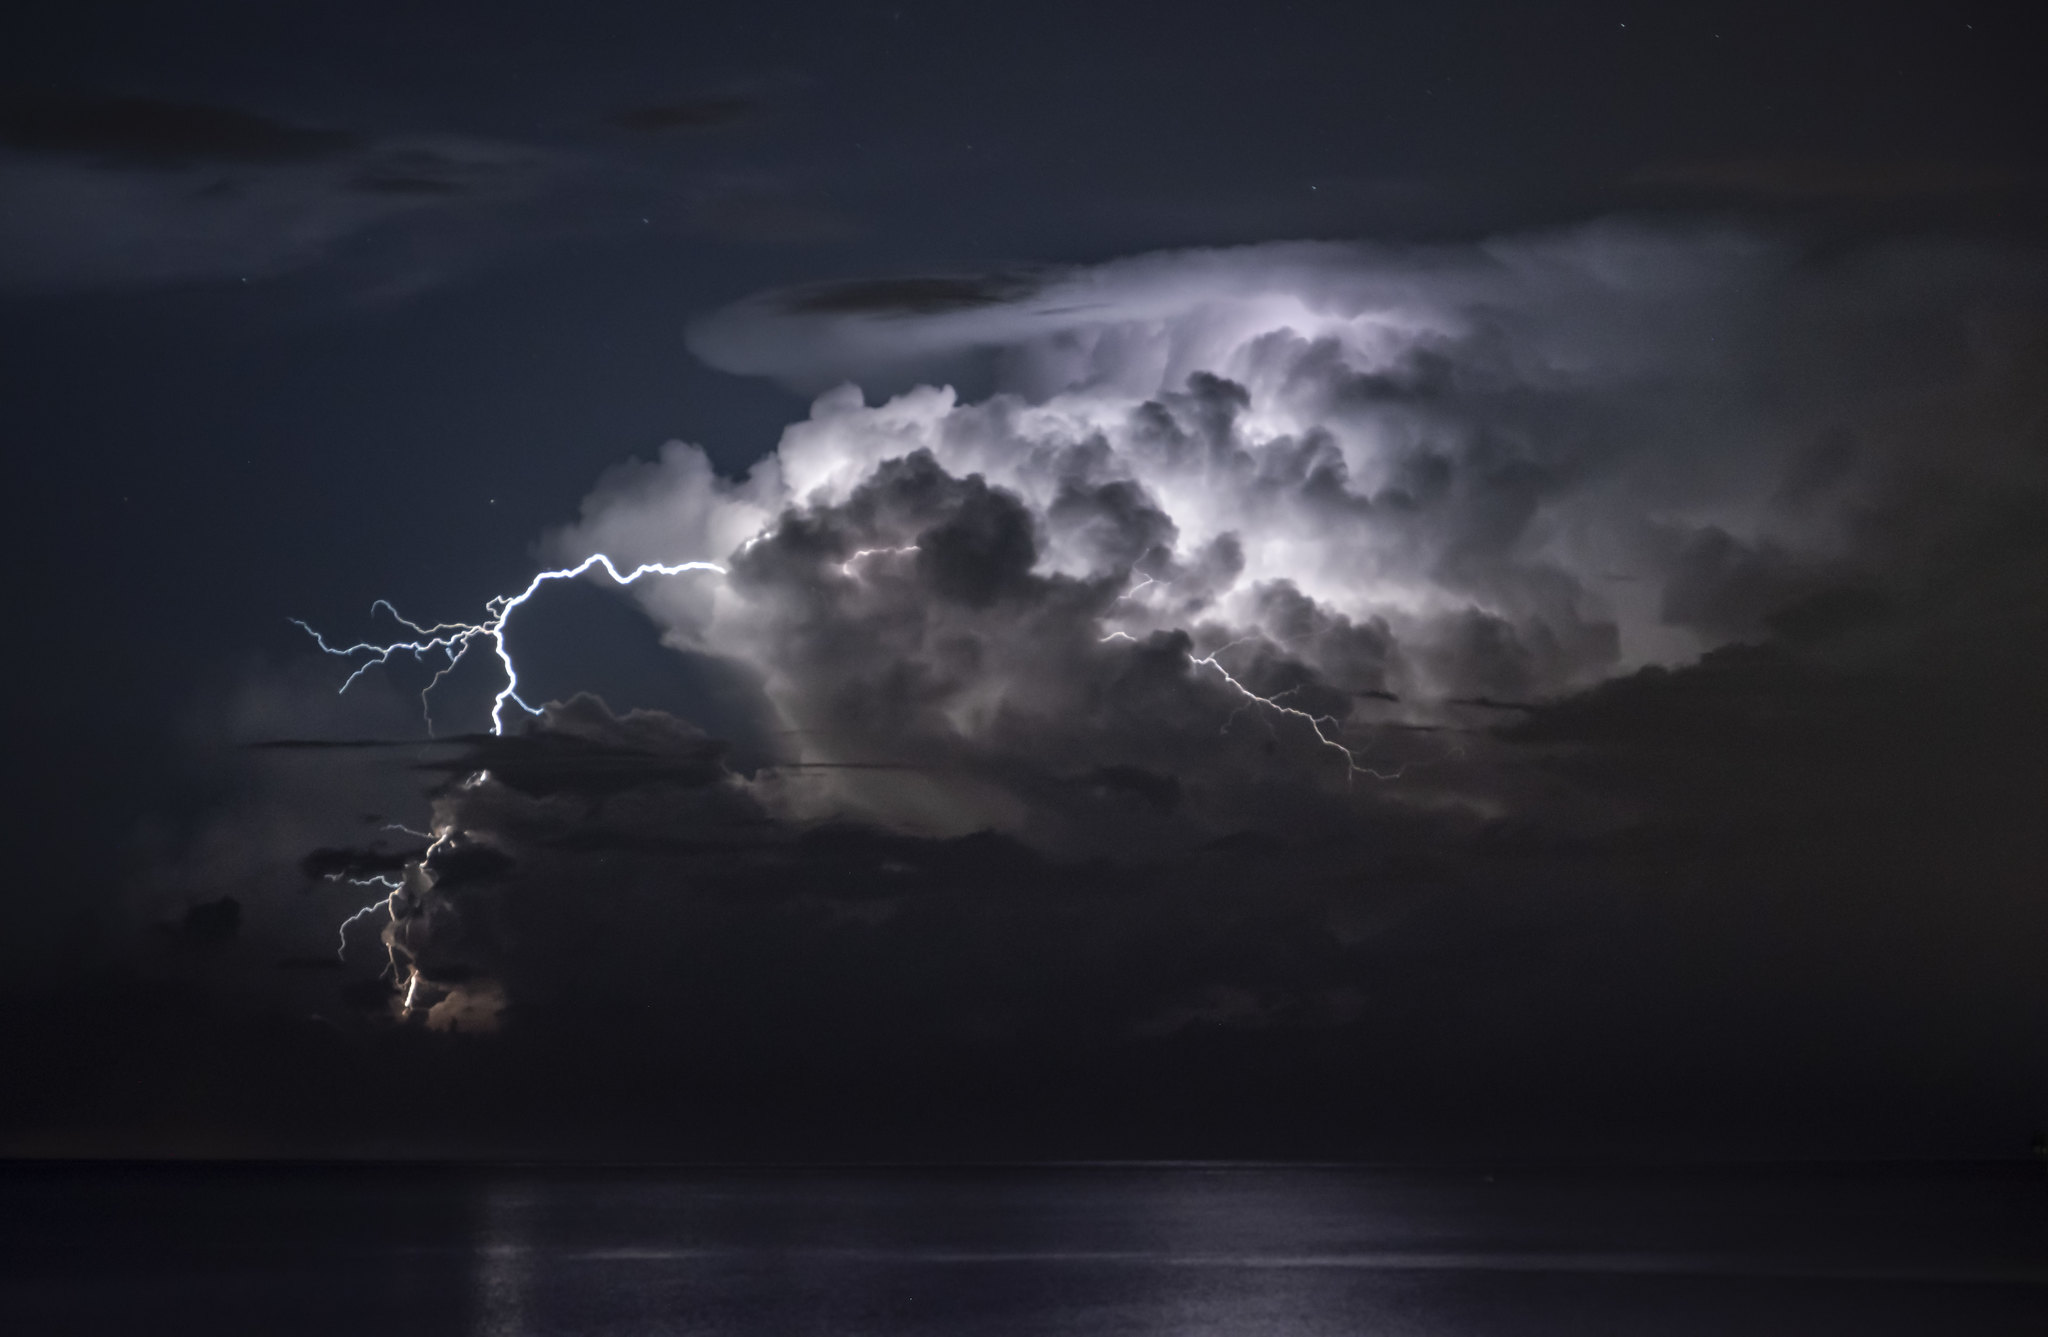 lightning from the anvil of a cumulonimbus cloud